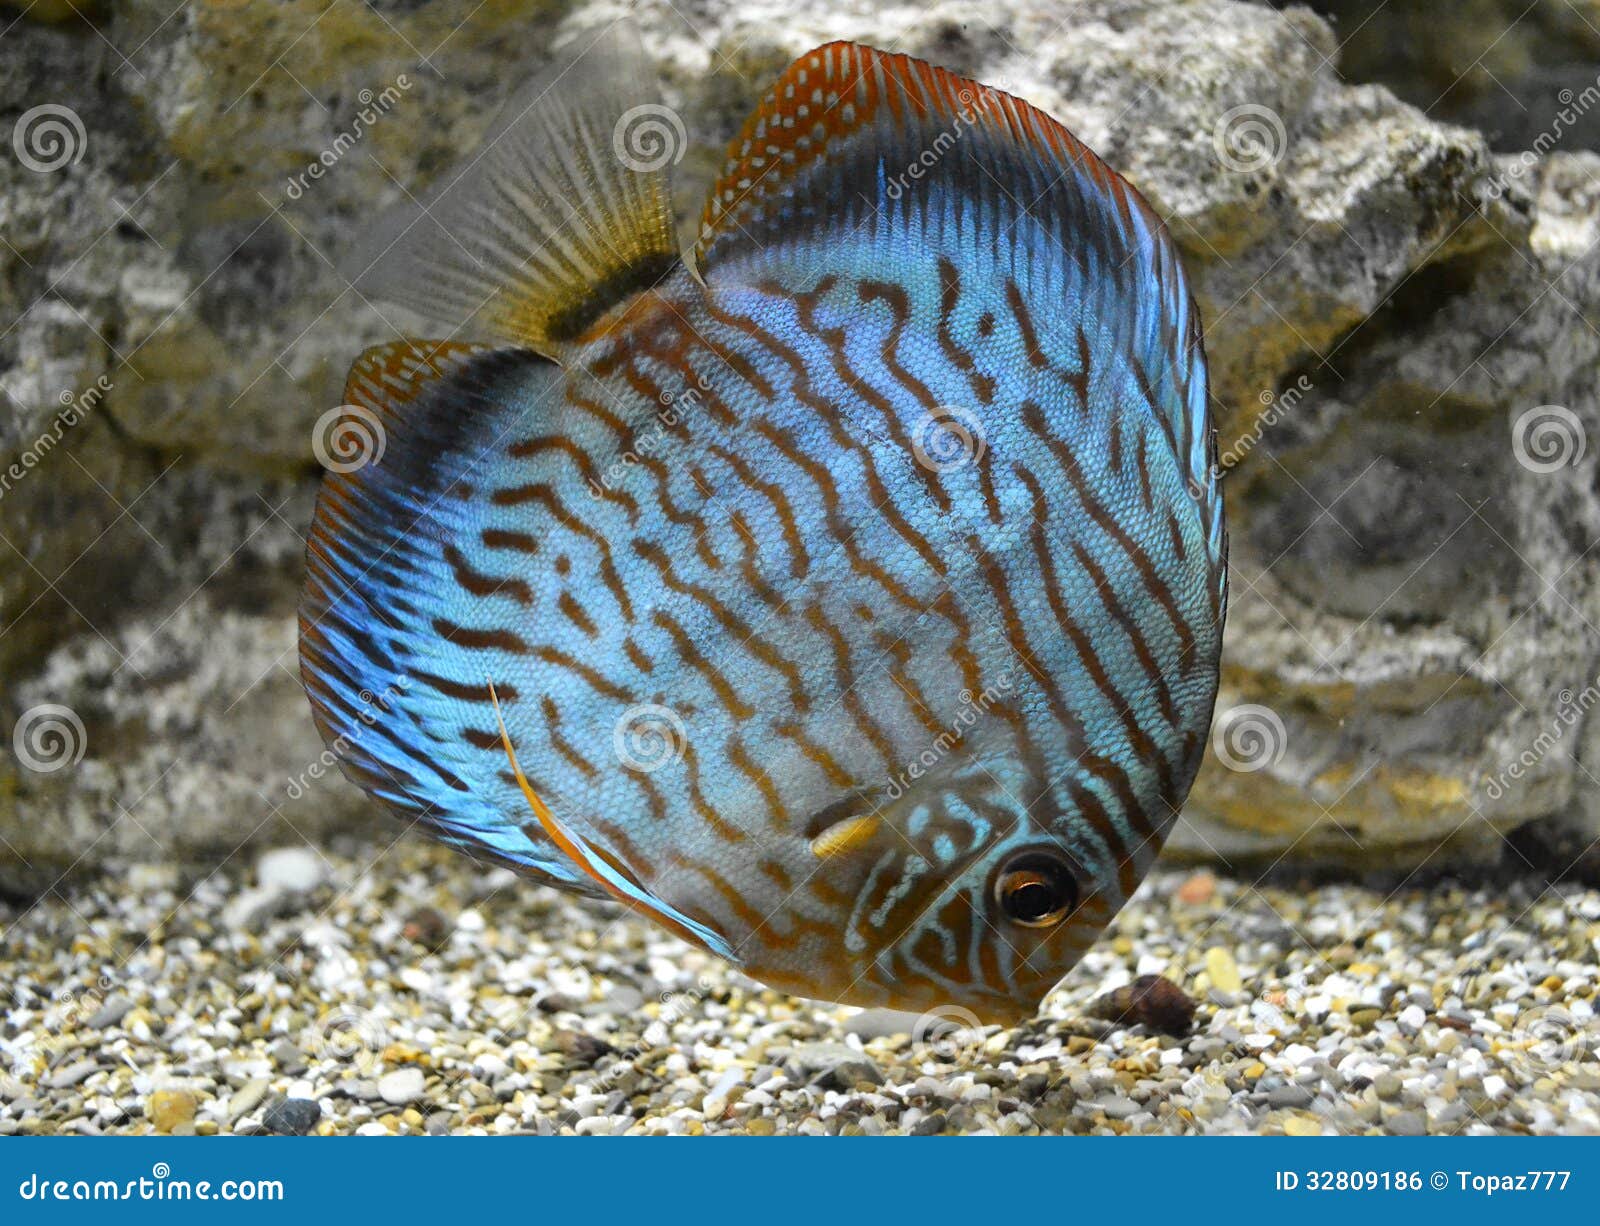 Discus For Aquarium Saltwater Fish Stock Photo Image Of Marine Plant 32809186